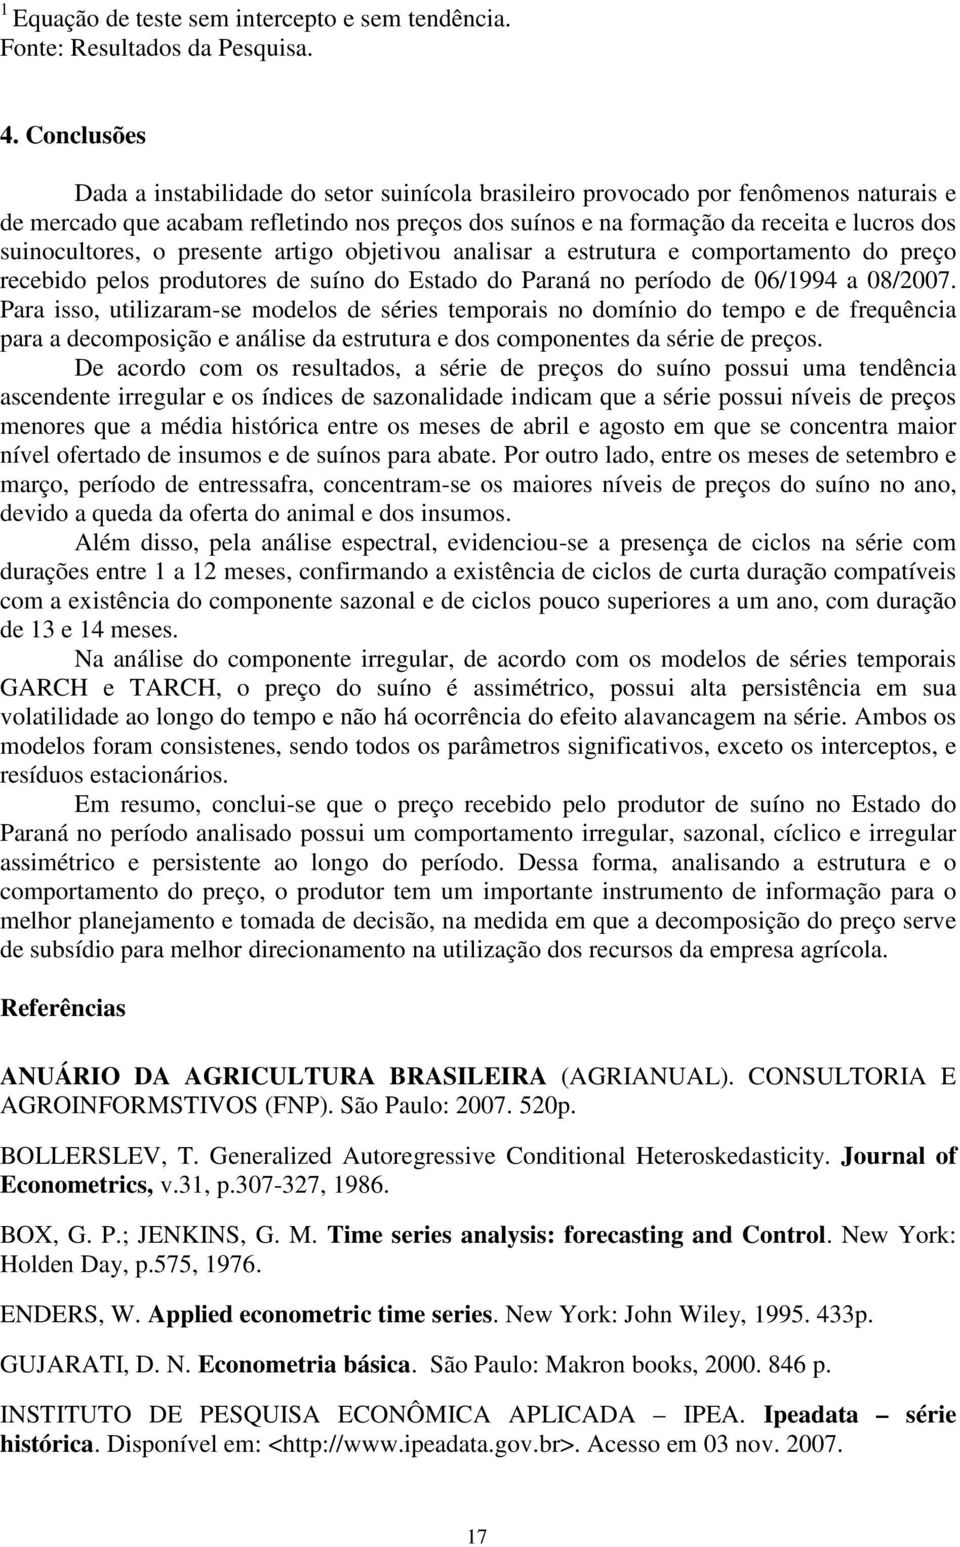 o presene arigo objeivou analisar a esruura e comporameno do preço recebido pelos produores de suíno do Esado do Paraná no período de 6/994 a 8/7.